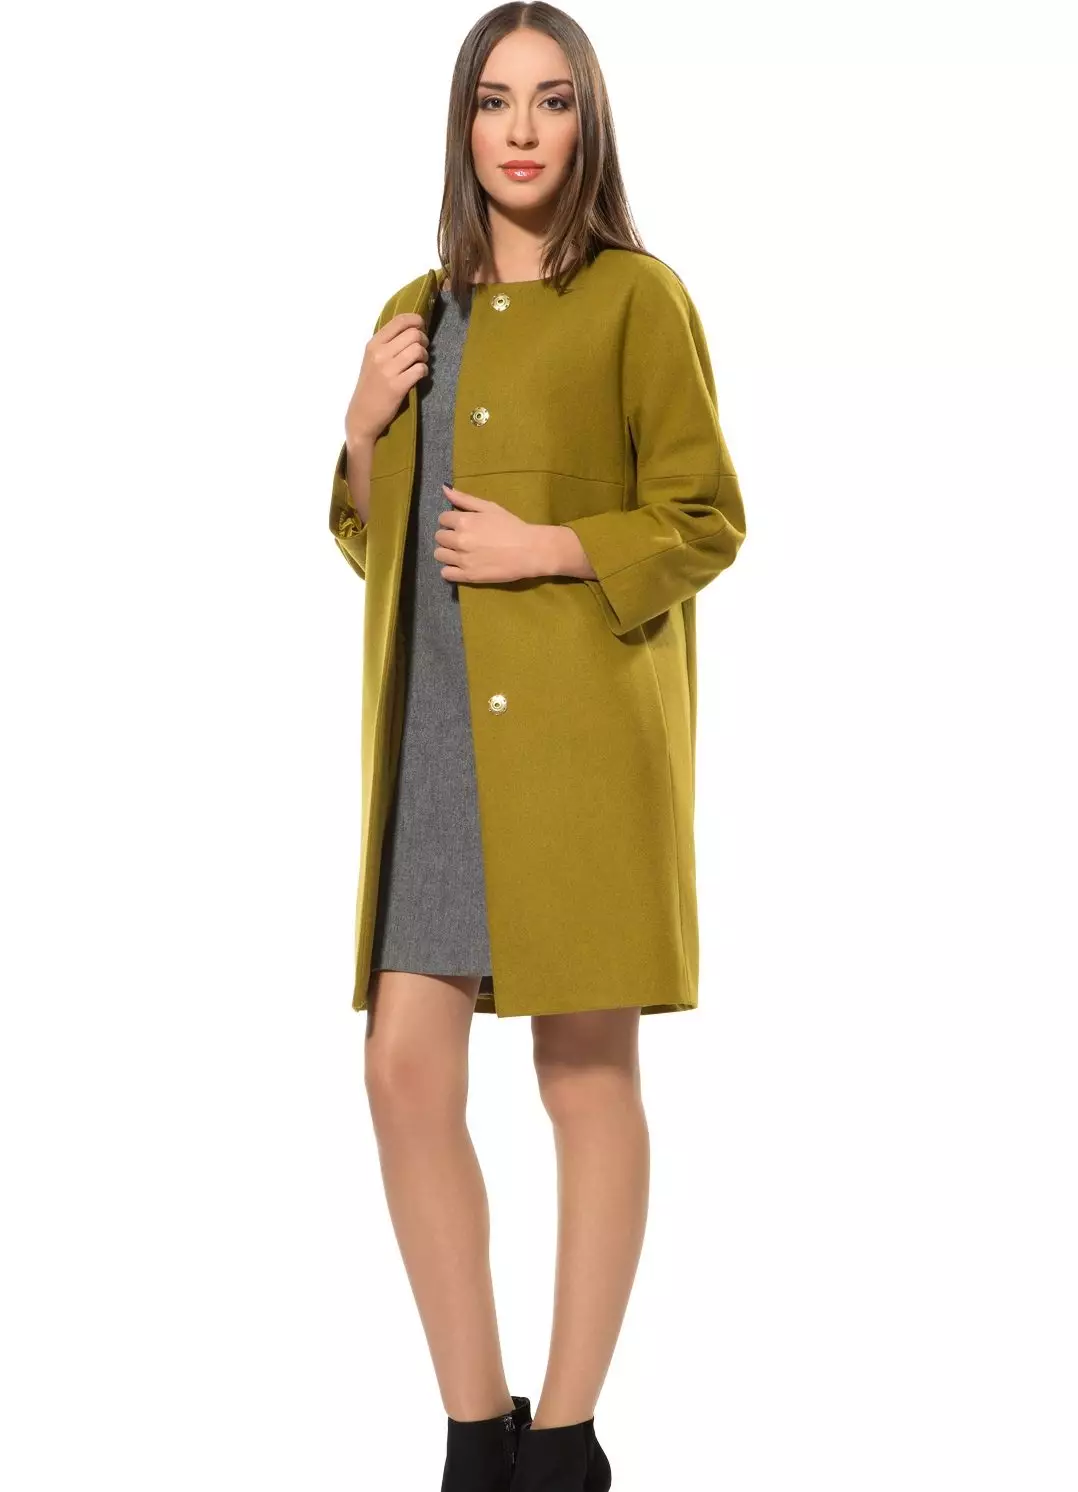 グリーンコート（122写真）を着用するもの：濃い緑、スカーフがフィット、バッグ、アクセサリー、英語の襟付きコート 601_60